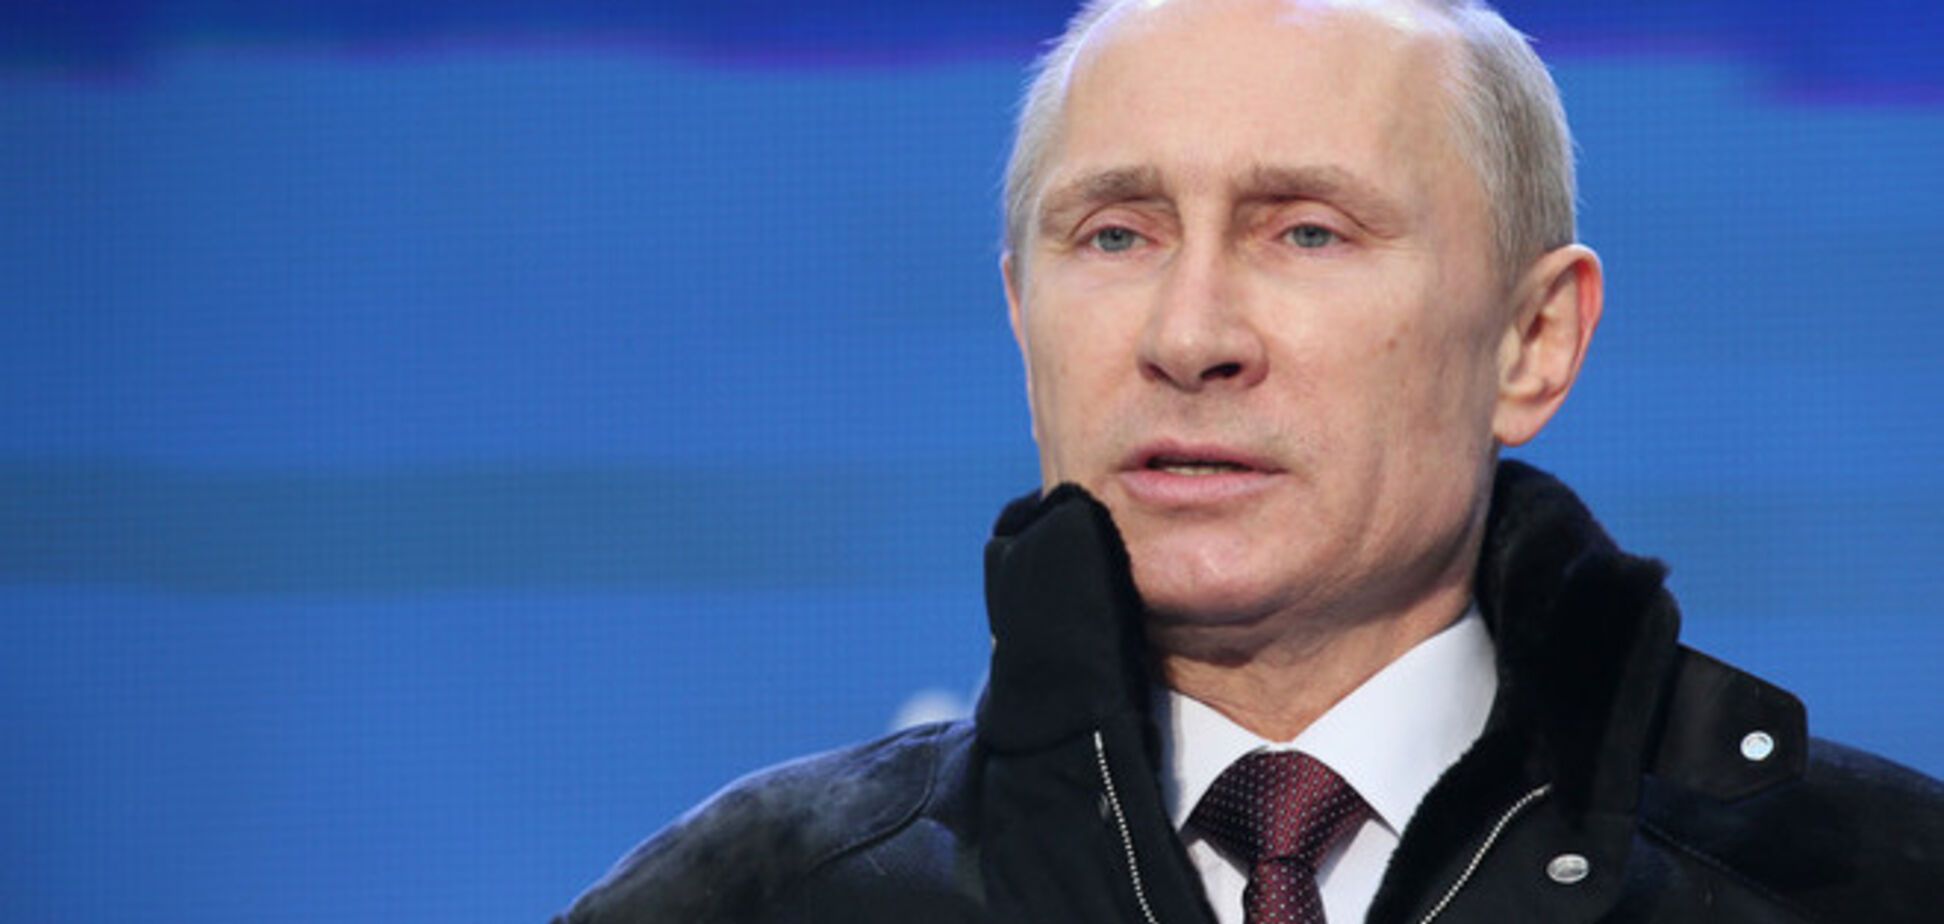 Путин навязывает Украине федерализацию, которую уничтожил в РФ - Немцов